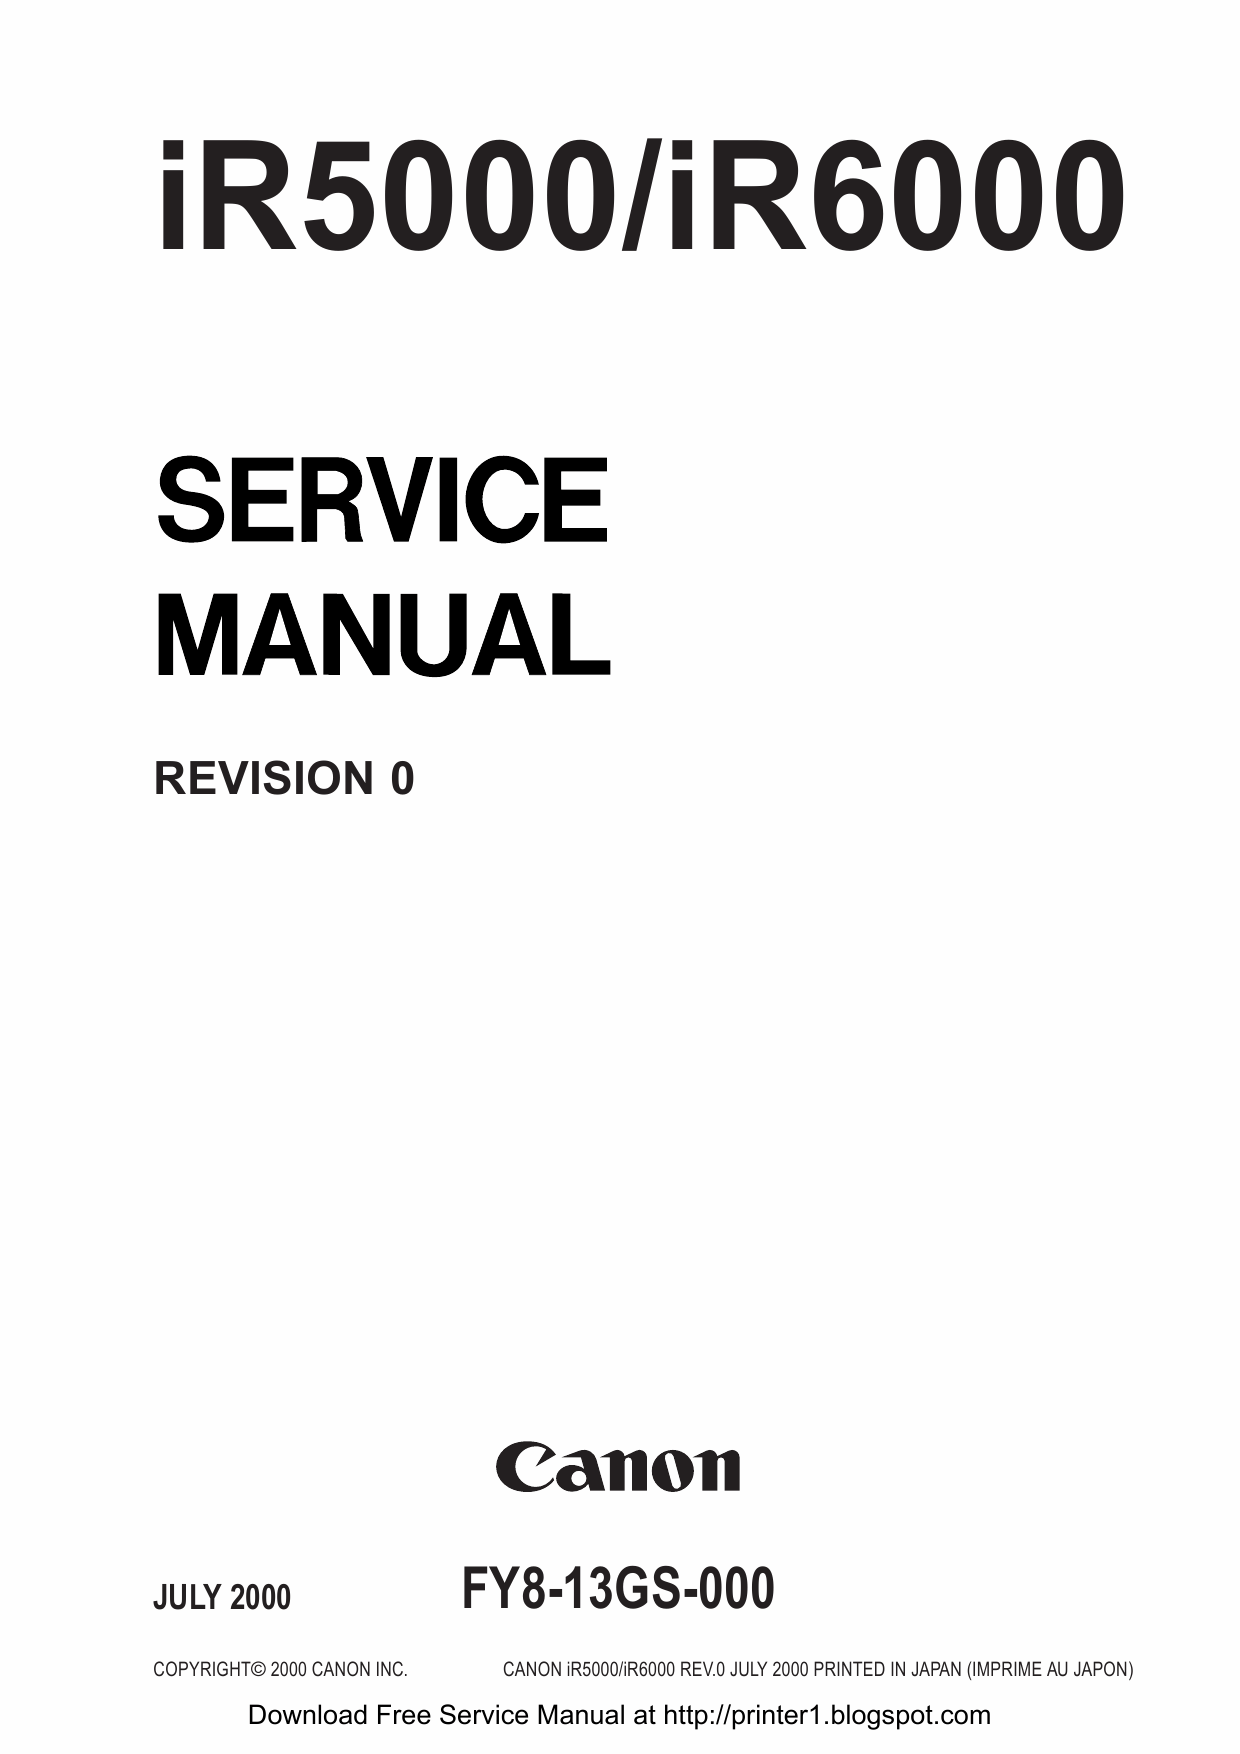 Canon imageRUNNER-iR 5000 6000 Service Manual-1